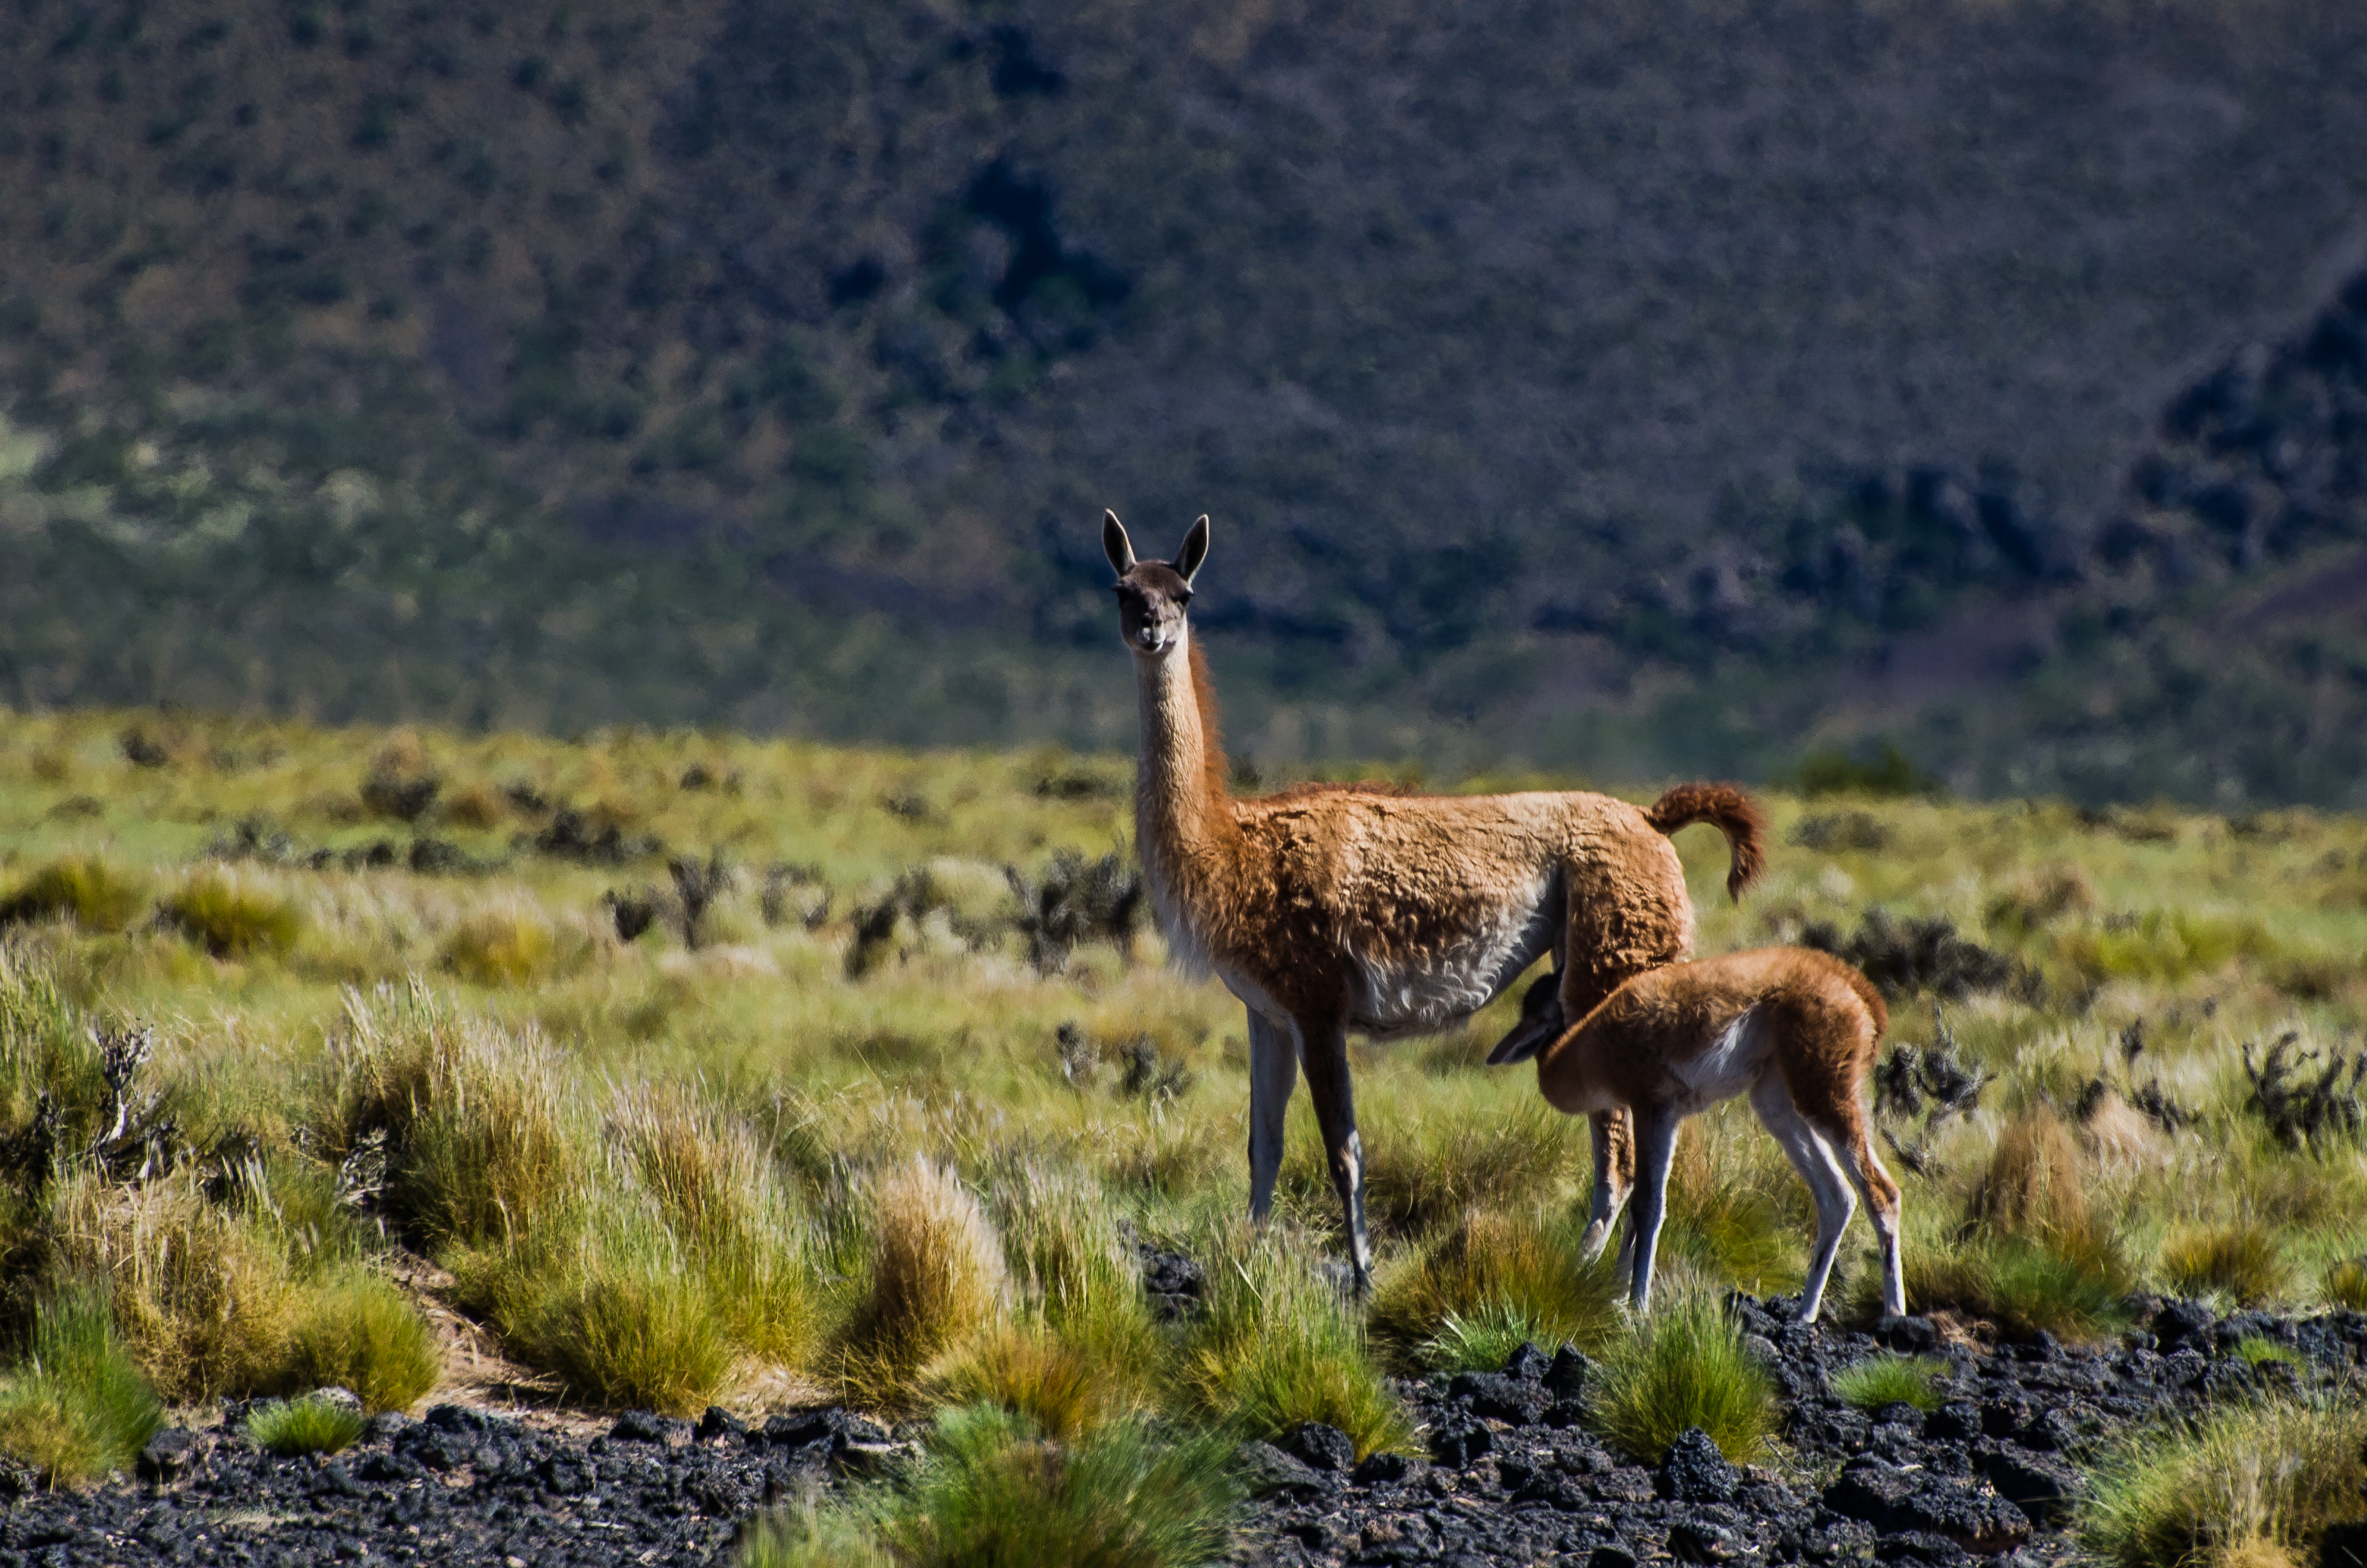 La reserva provincial de La Payunia, en Mendoza, incluye a miles de guanacos que están monitoreando con drones". Crédito: Antonella Panebianco.